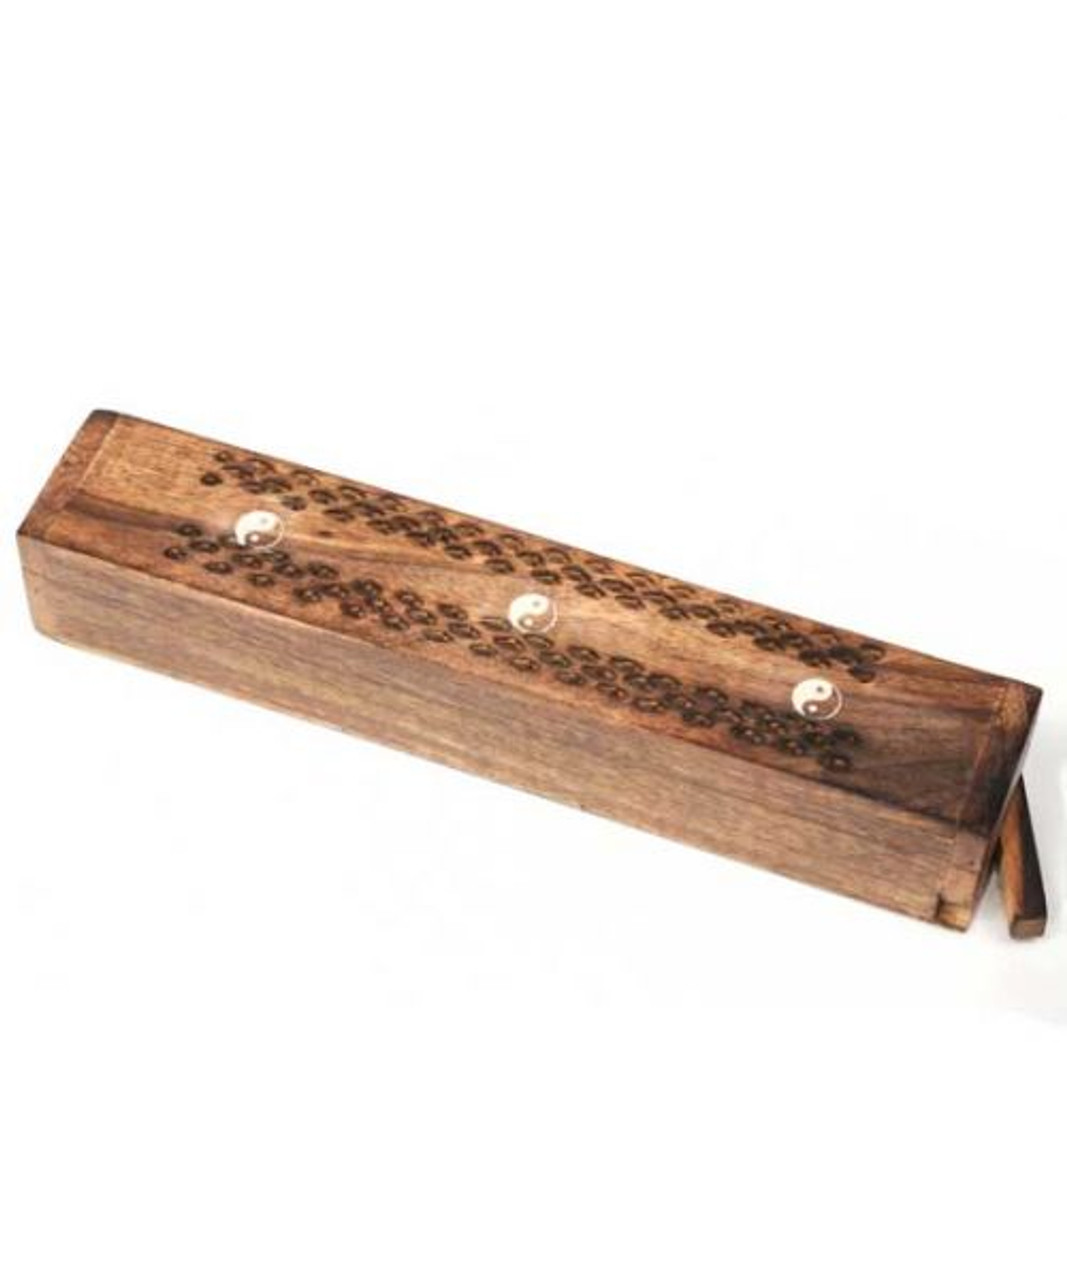 12" Wood Box Incense Burner with Yin Yang